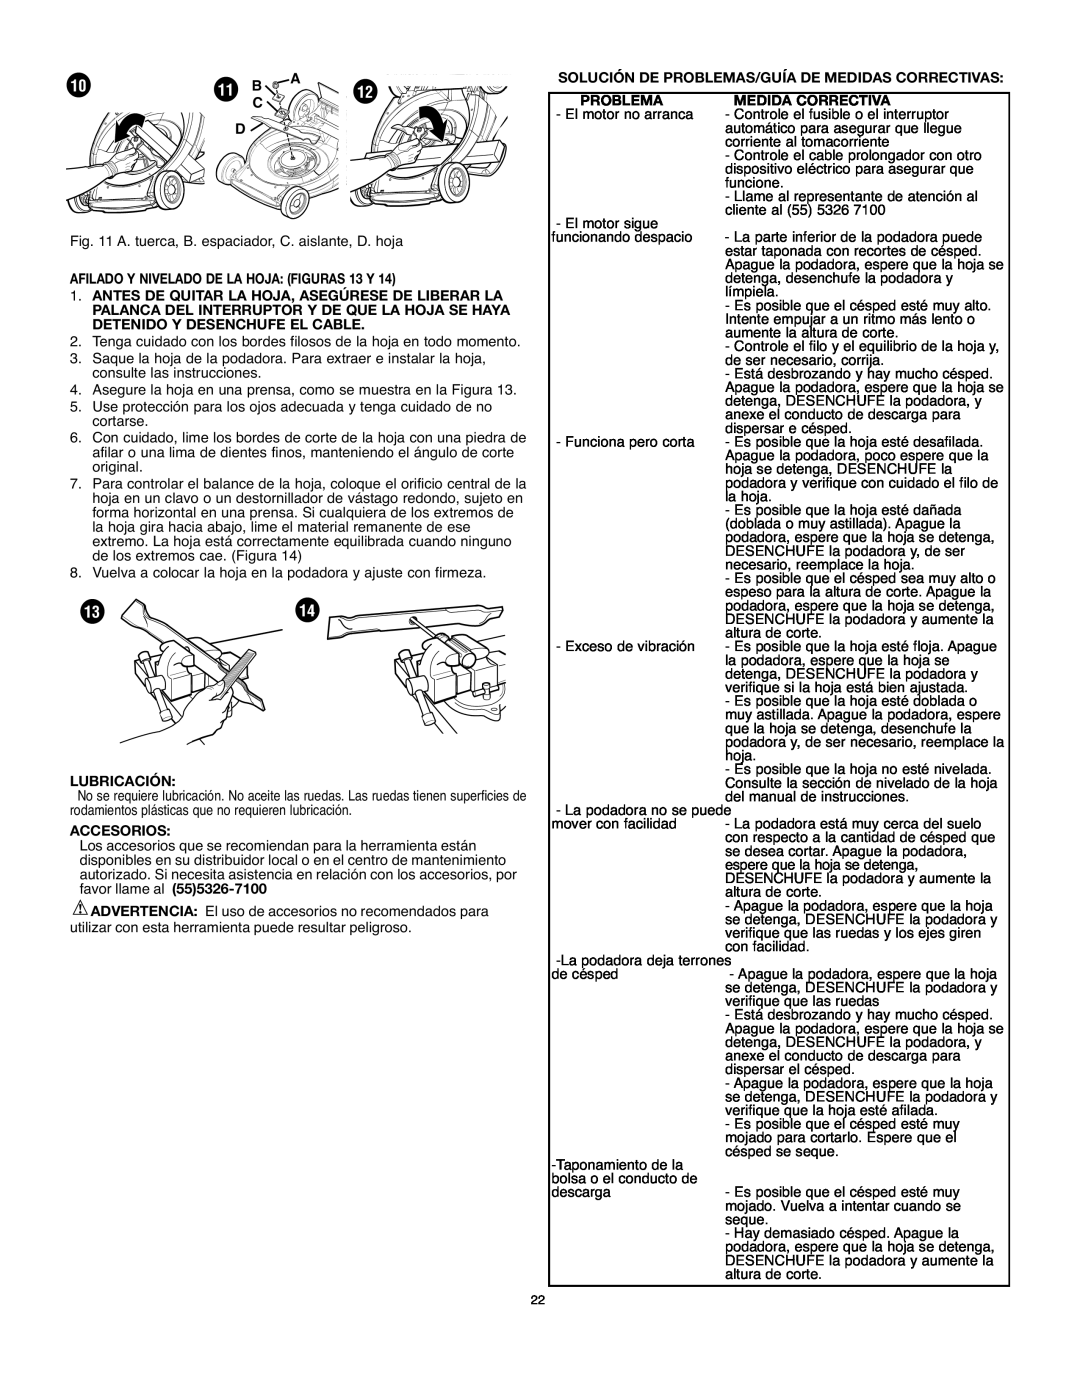 Black & Decker MM575 instruction manual 11 B, AFILADO Y NIVELADO DE LA HOJA FIGURAS 13 Y, Lubricación, Accesorios 